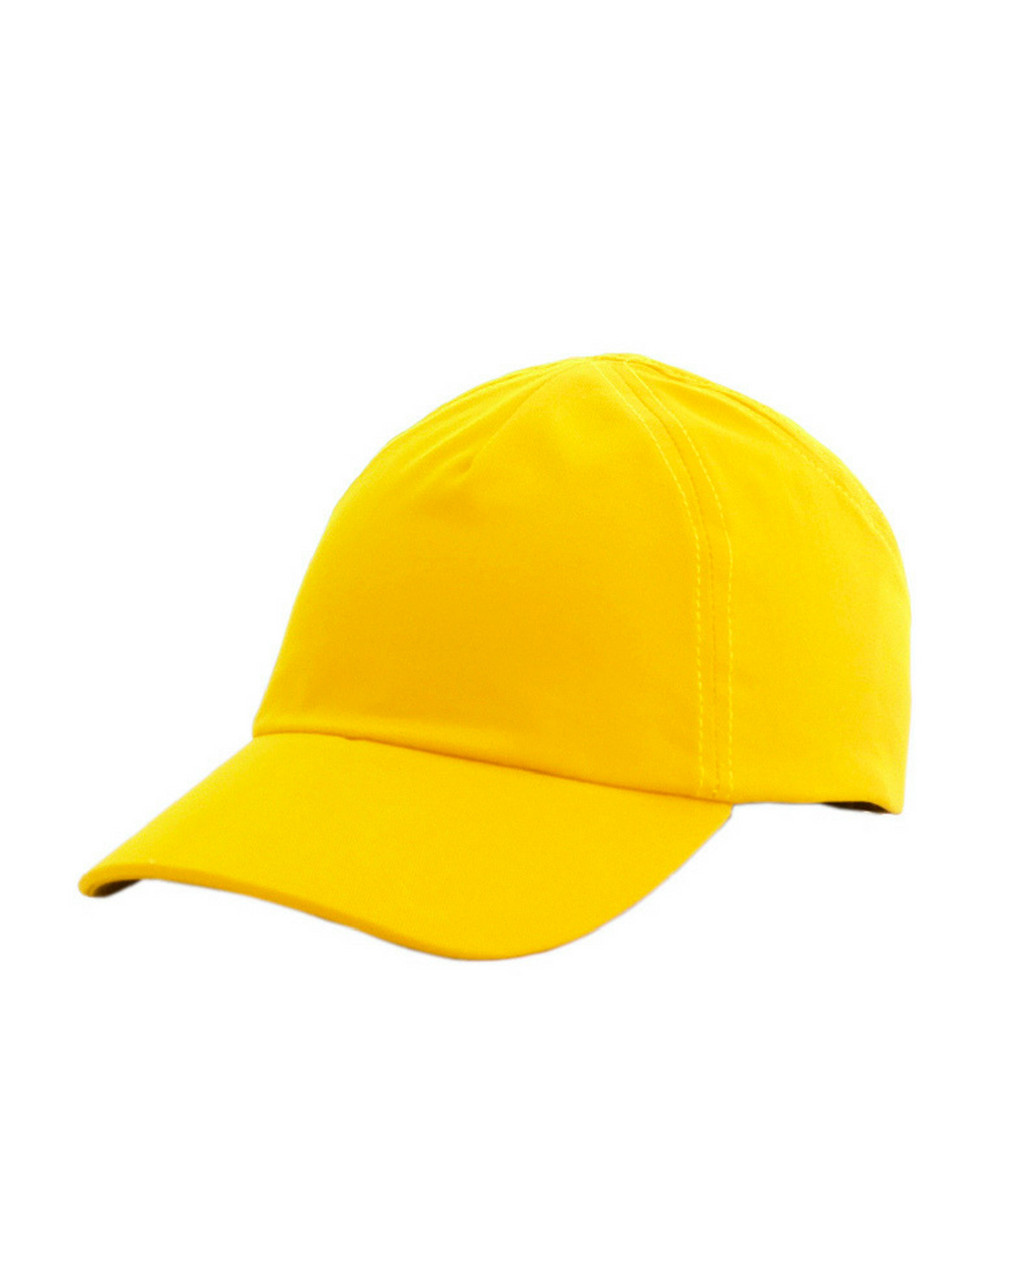 Каскетка РОСОМЗ RZ FavoriT CAP жёлтая, 95515